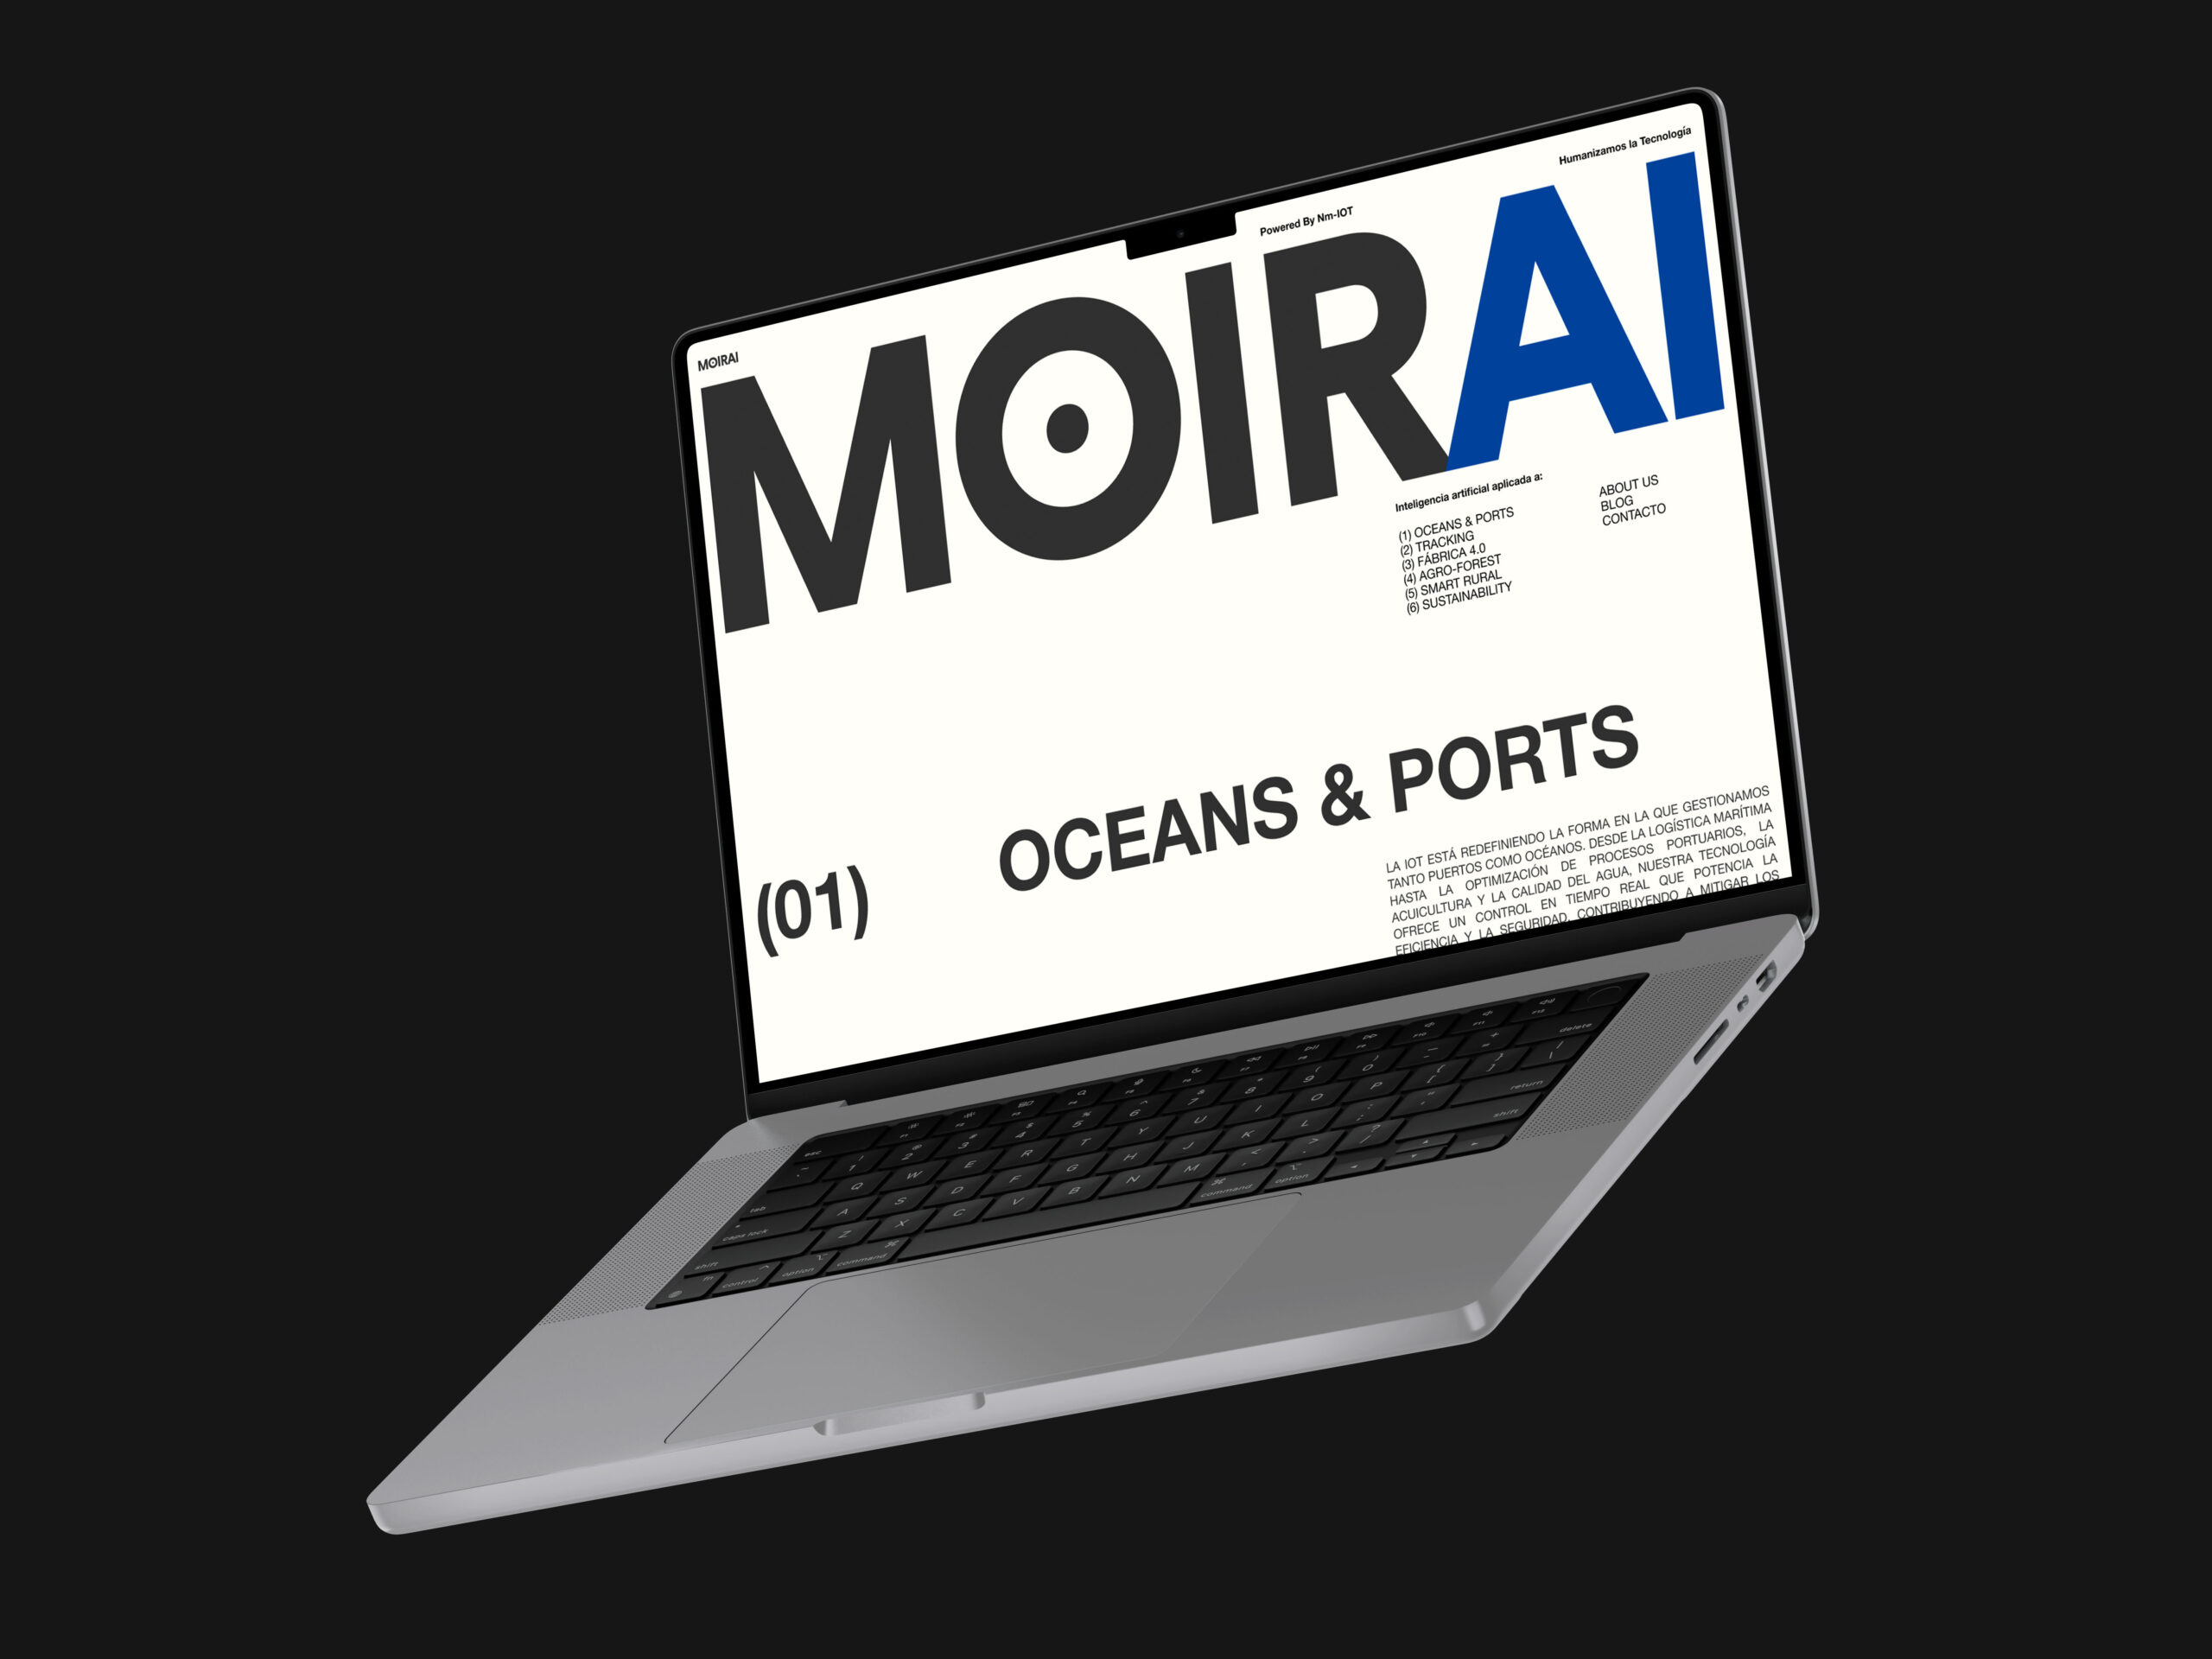 MOIRAI OCEANS & PORTS